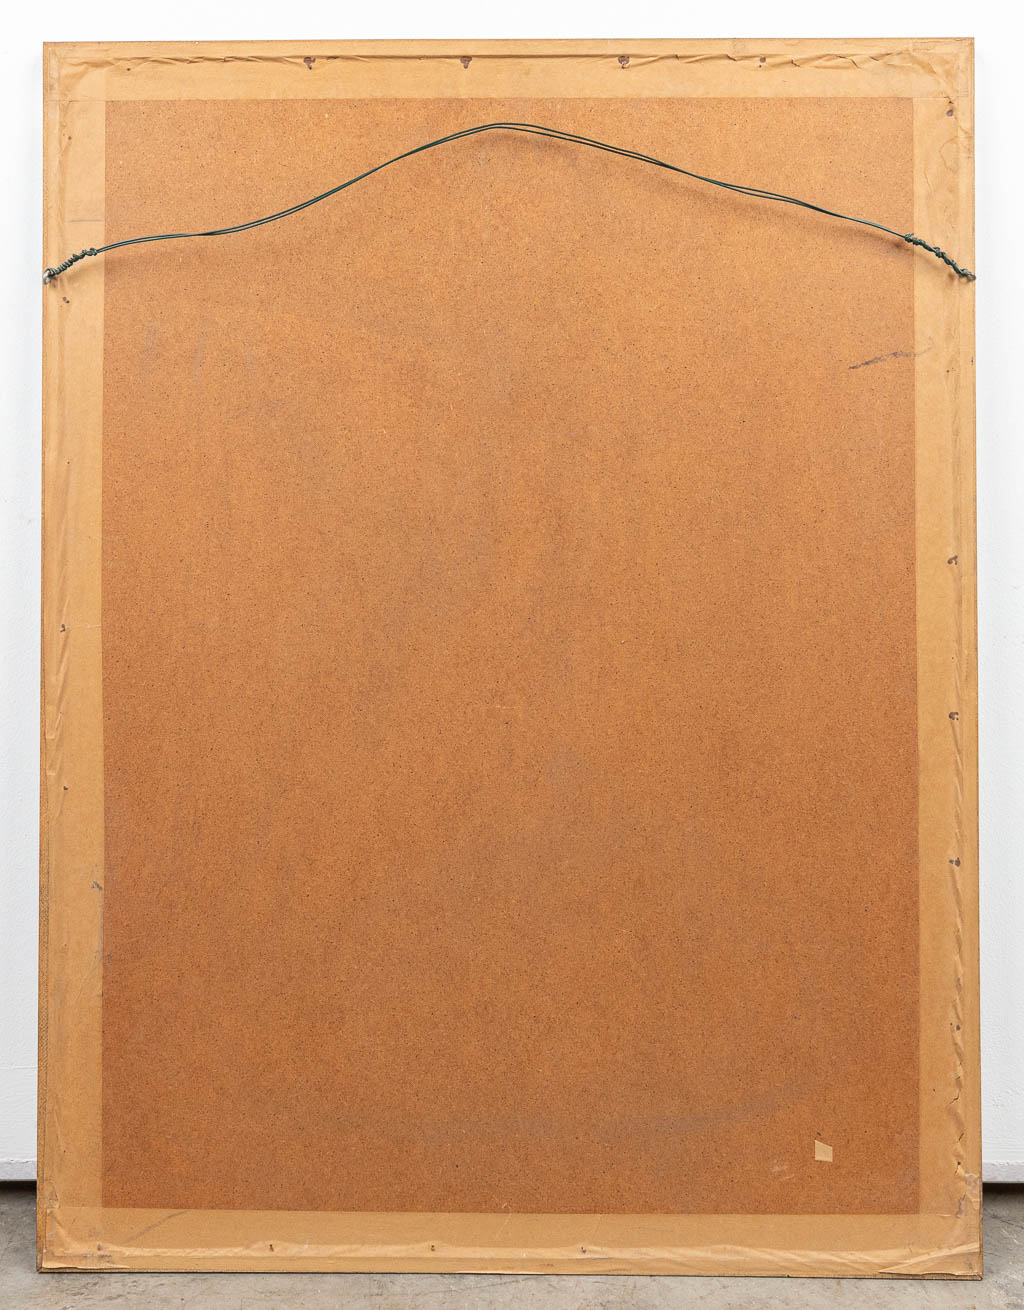 Roger RAVEEL (1921-2013) 'Aanschouwen' een lithografie gesigneerd, 1973. 23/175. (42 x 60 cm)